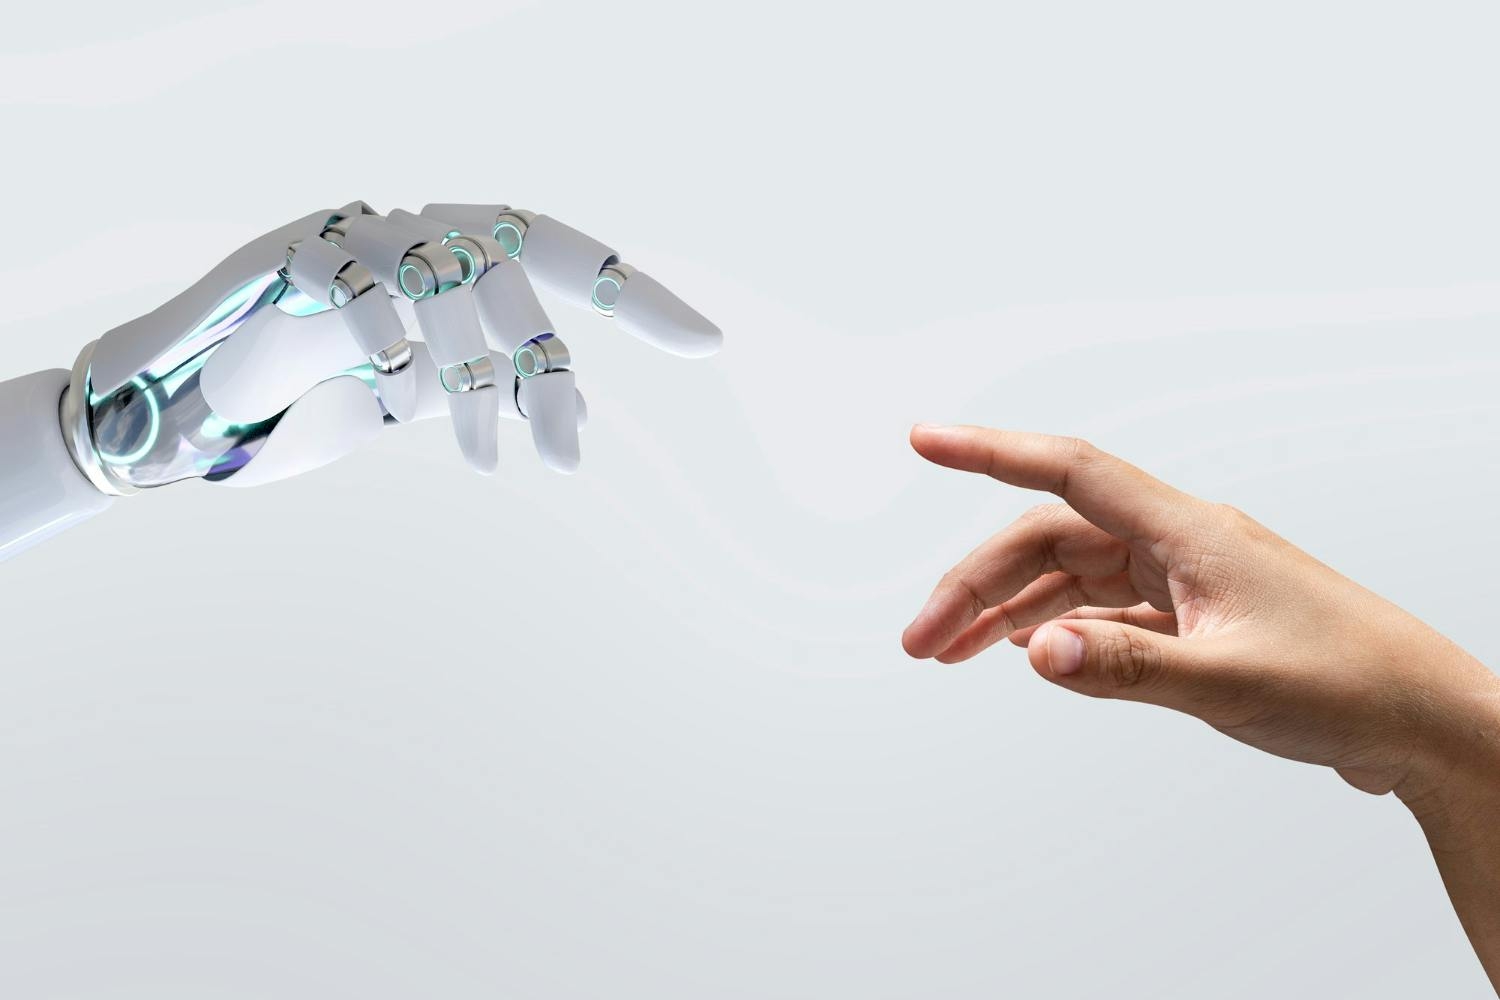 Mano robot y mano humana a punto de tocarse, como en el cuadro de "La creación de Adán", elaborado por Miguel Ángel.